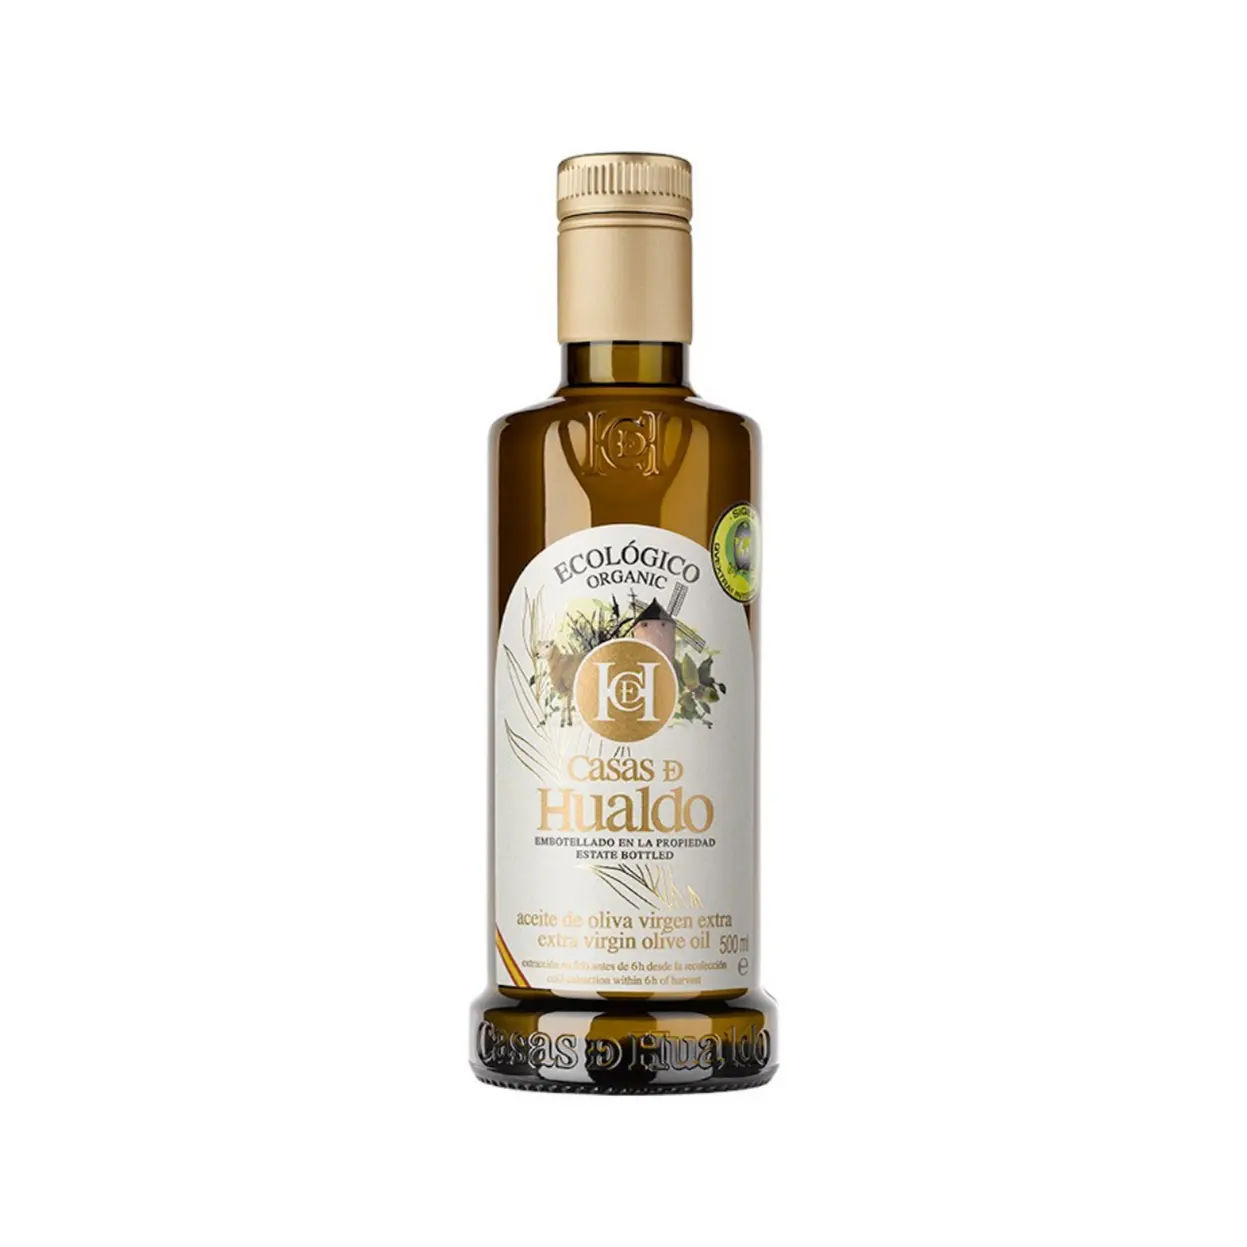 Olio d'oliva Extra vergine spagnolo. Premium-organico-500ml. Il risultato è un olio piacevole e profumato con un lungo retrogusto.